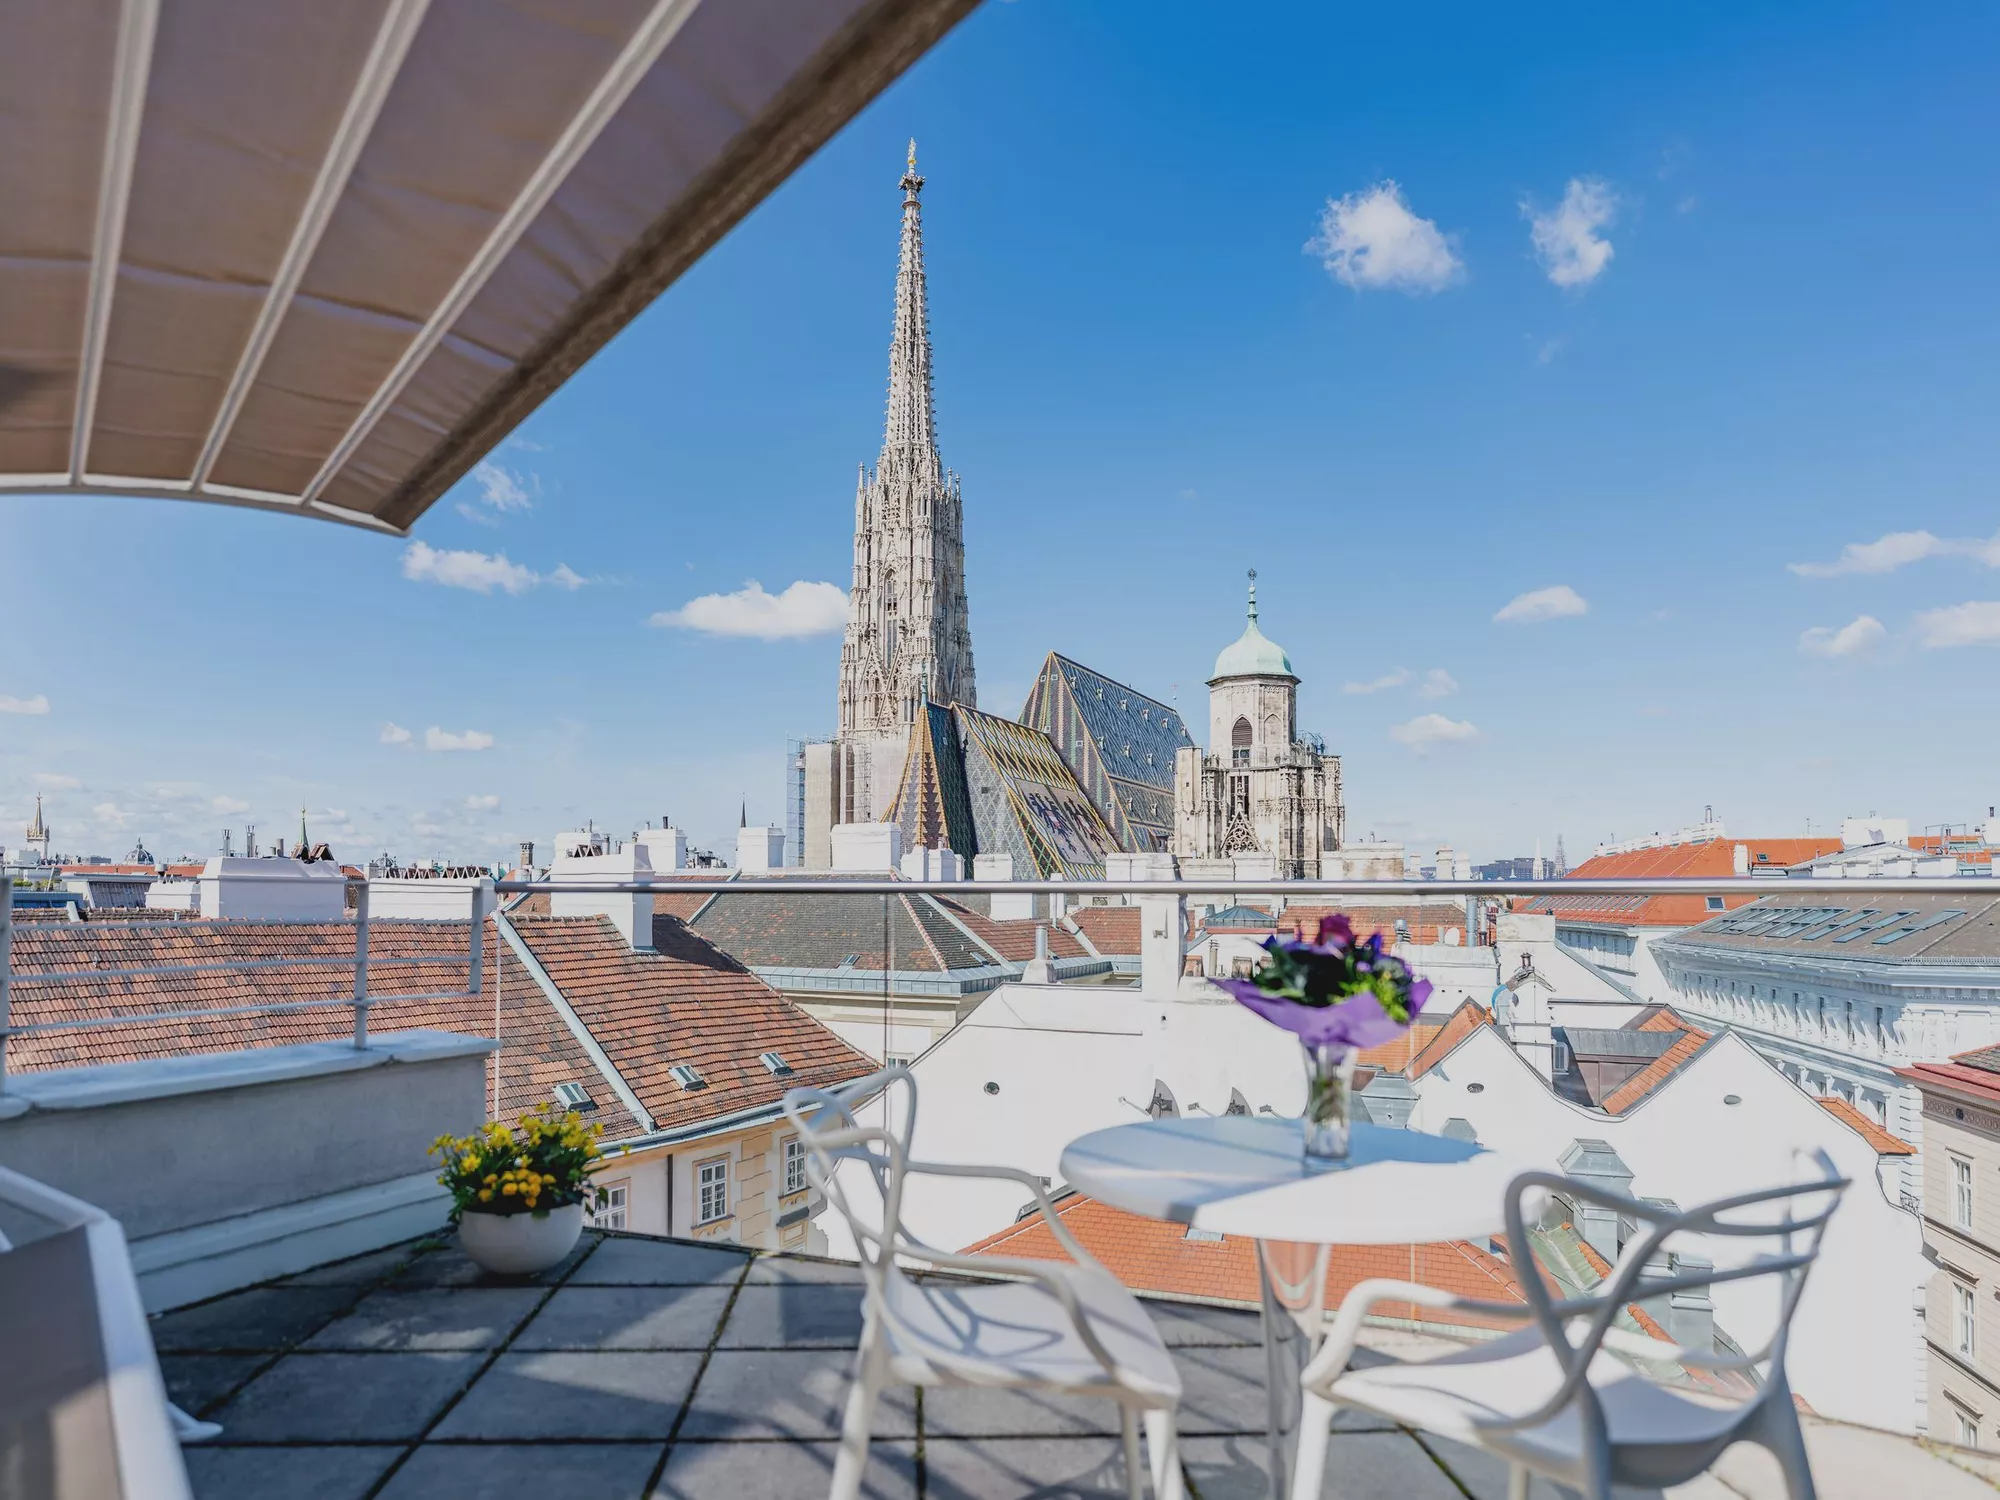 Blick von der Dachterrasse des Hotels König von Ungarn in Wien auf den Stephansdom